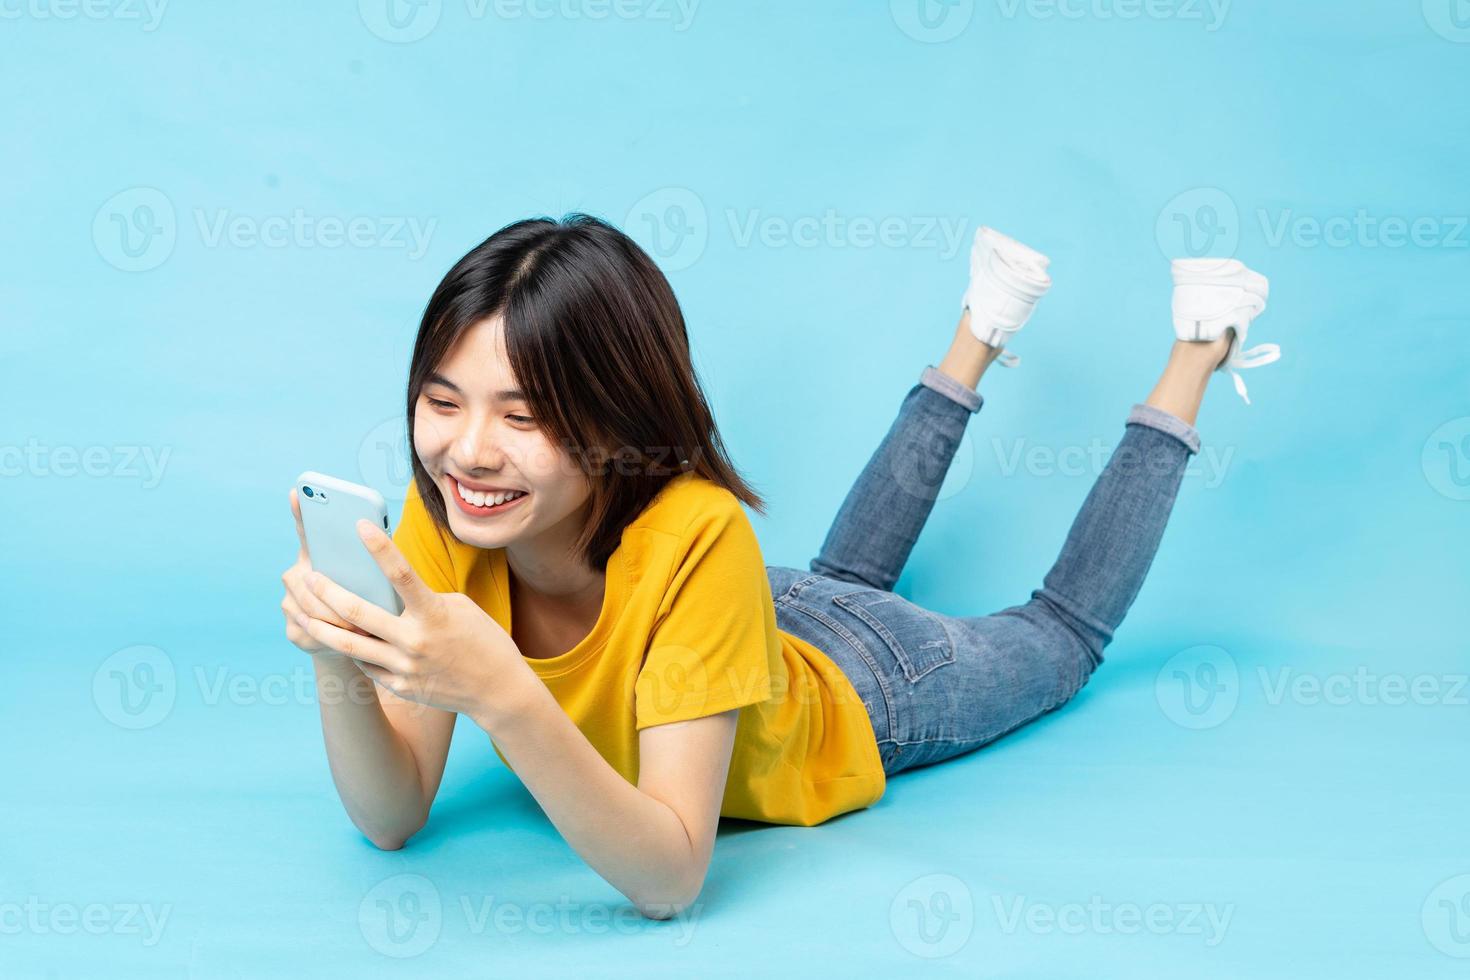 helkroppsporträtt av den lekfulla asiatiska flickan som ligger på blå bakgrund foto